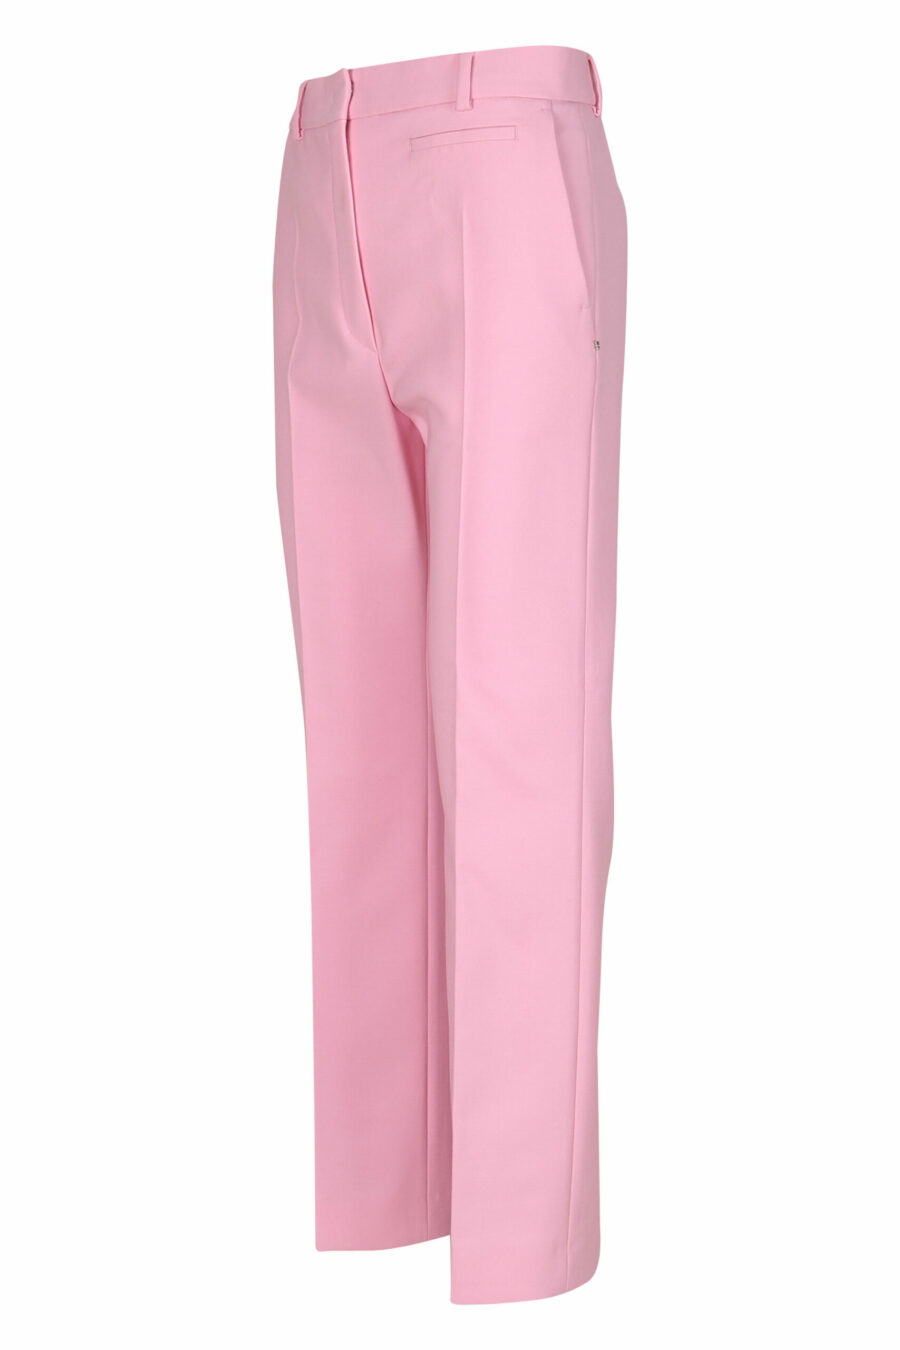 Pantalon large rose - 21310741060053 1 échelle